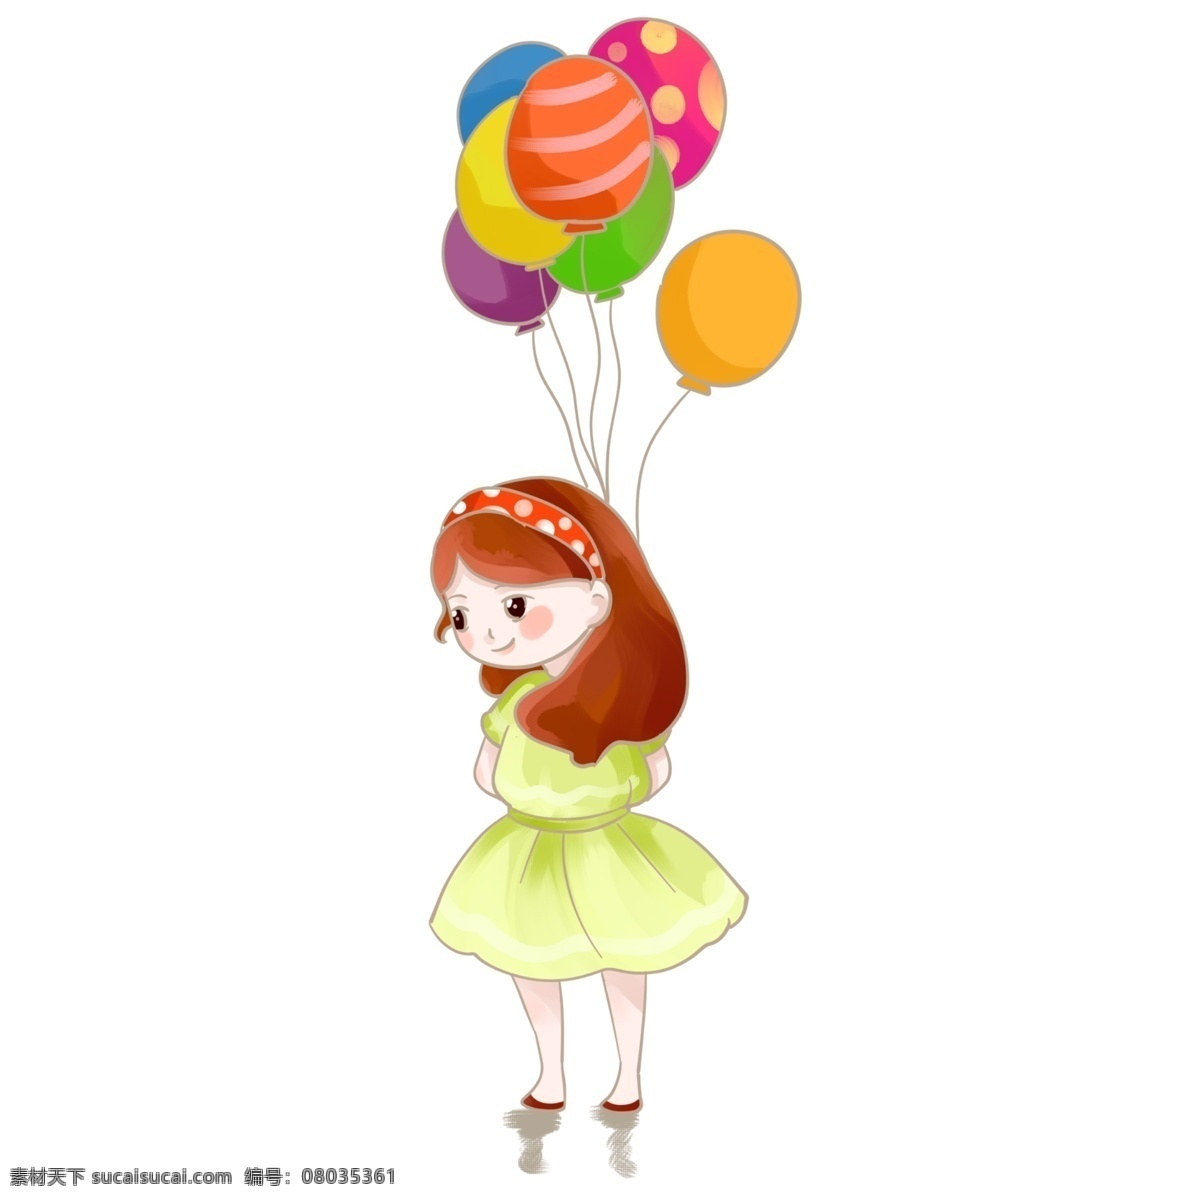 六一儿童节 可爱 小女孩 背 气球 儿童节 可爱的小女孩 黄绿色蓬蓬裙 波点发夹 五彩缤纷